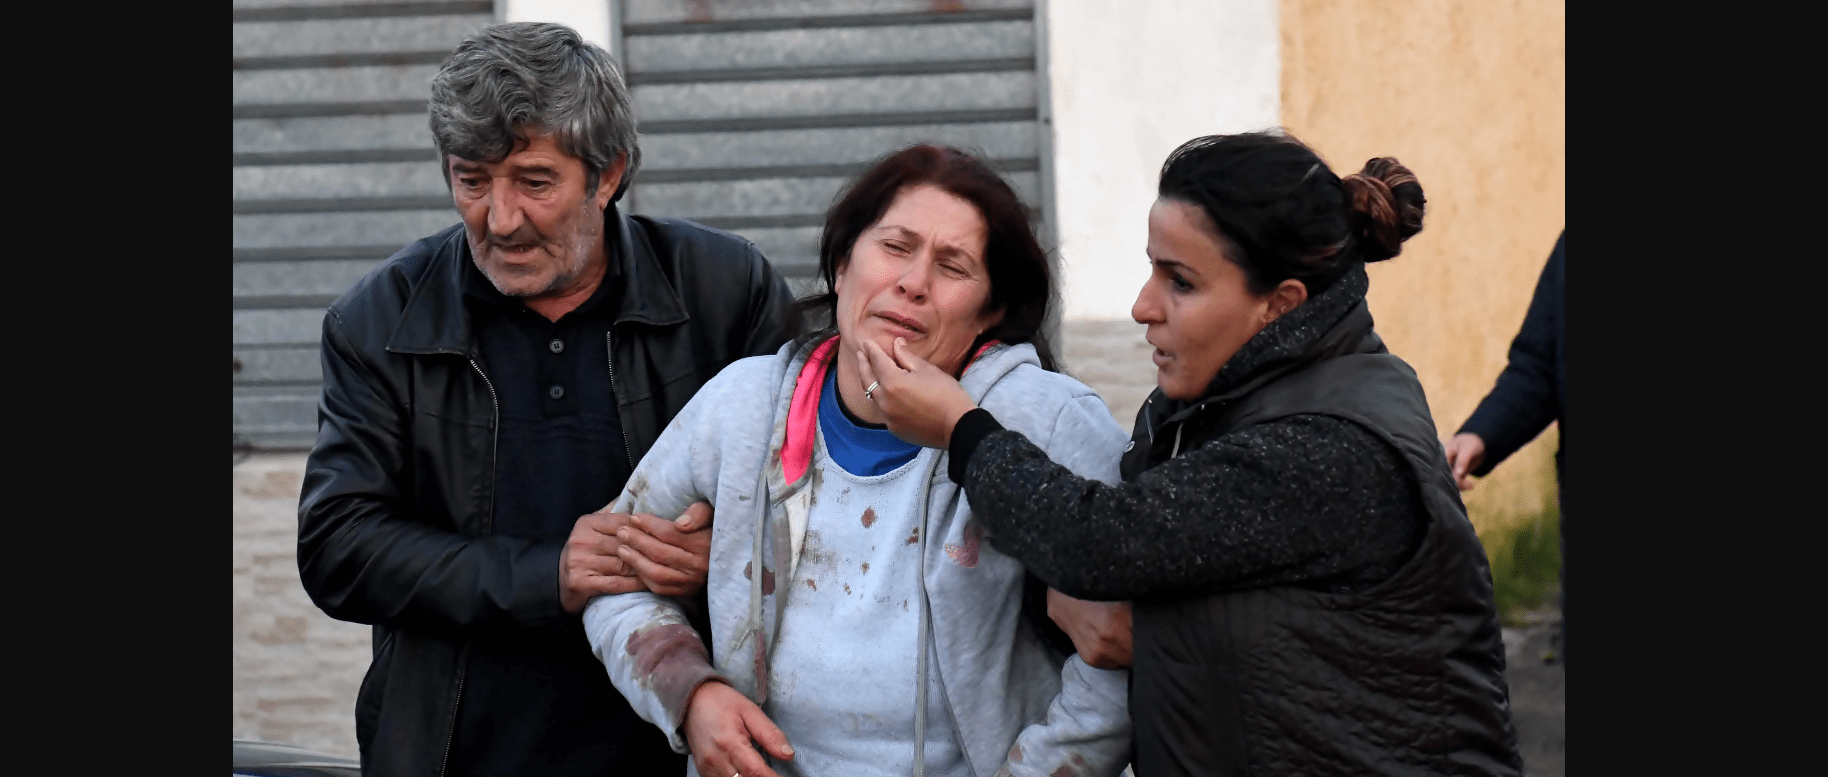 Σεισμός Αλβανία: Ο σεισμός ισοπέδωσε τη χώρα – 25 νεκροί, πάνω από 650 οι τραυματίες